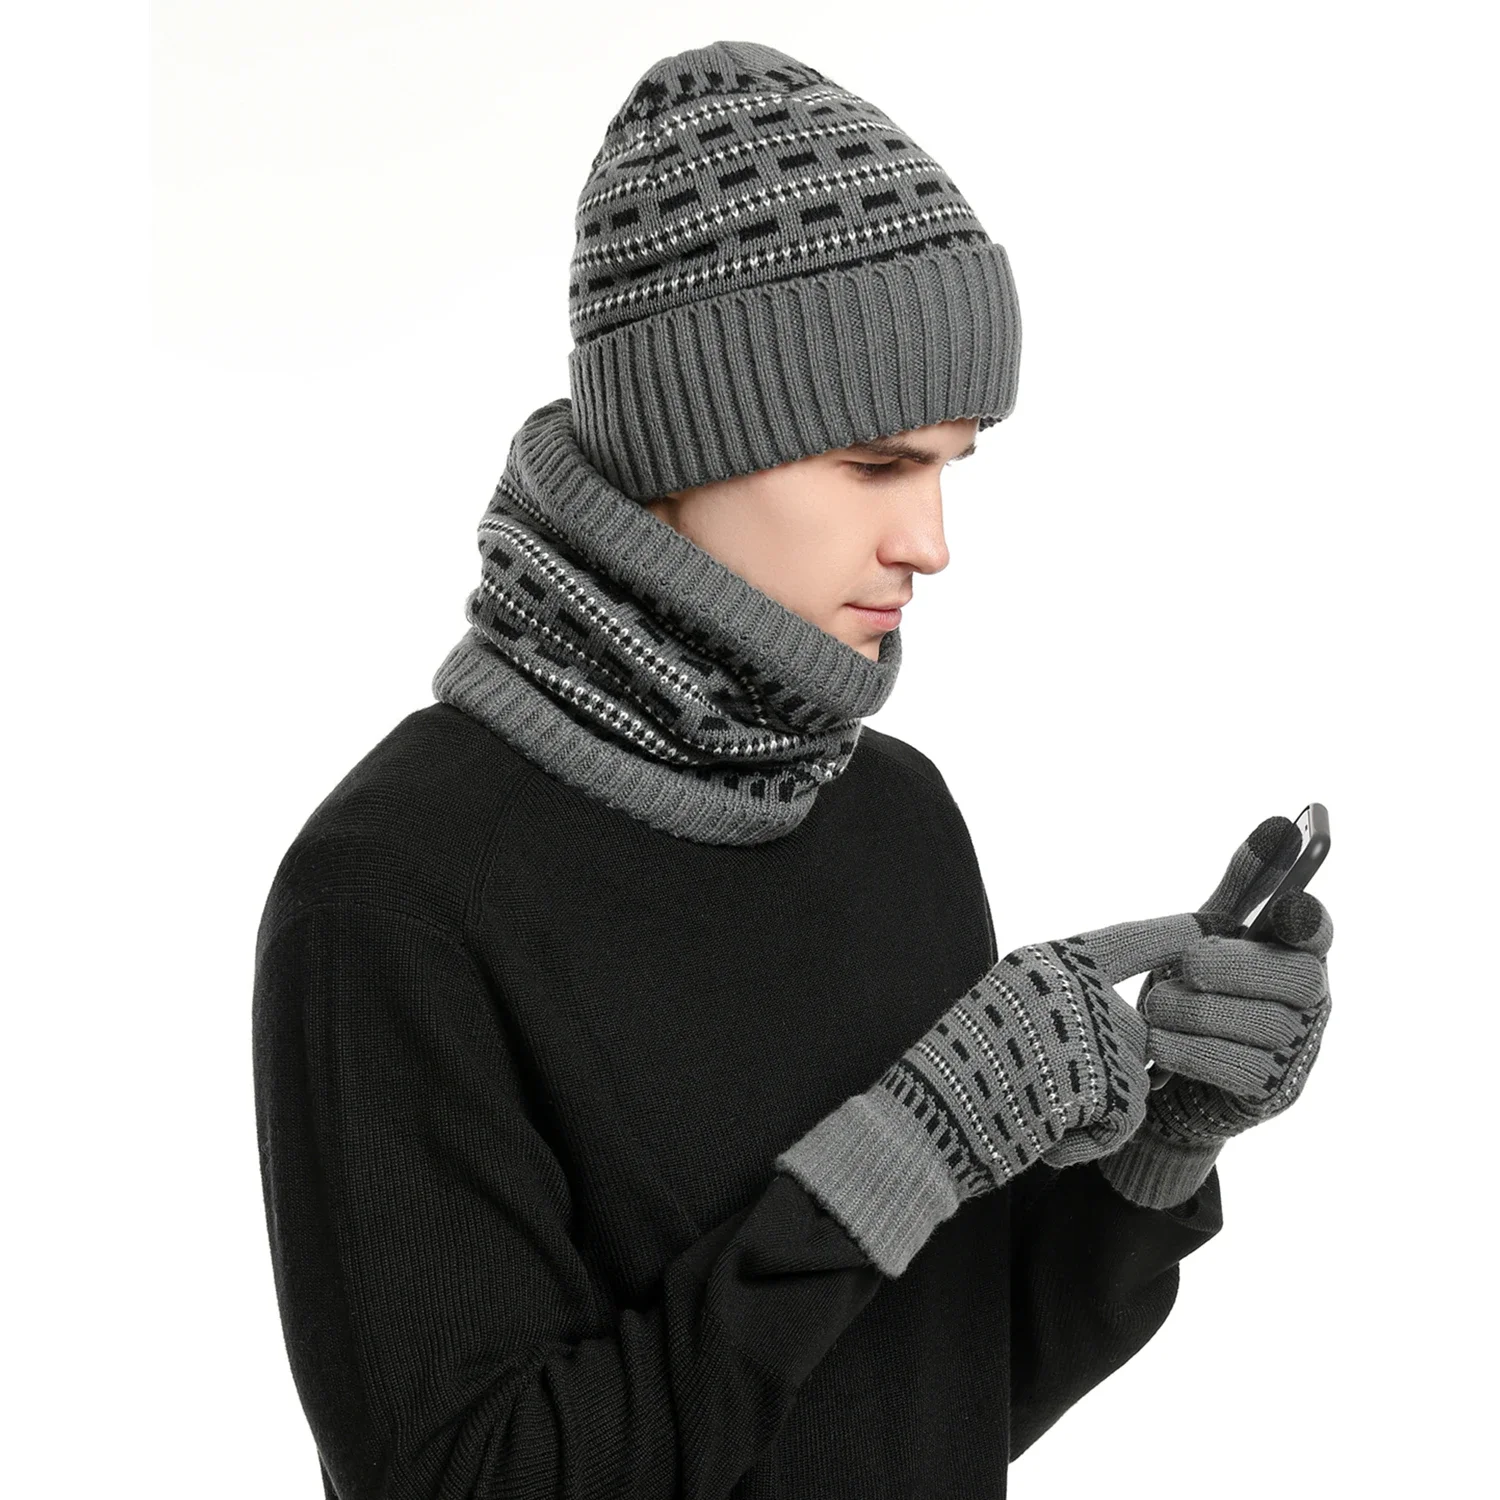 Heren Winter Warm Set Unisex Muts Telekingers Handschoenen Fleece Voering Sjaal Mannelijke Wollen Garen Gebreide Muts Hals Gaiter Muts